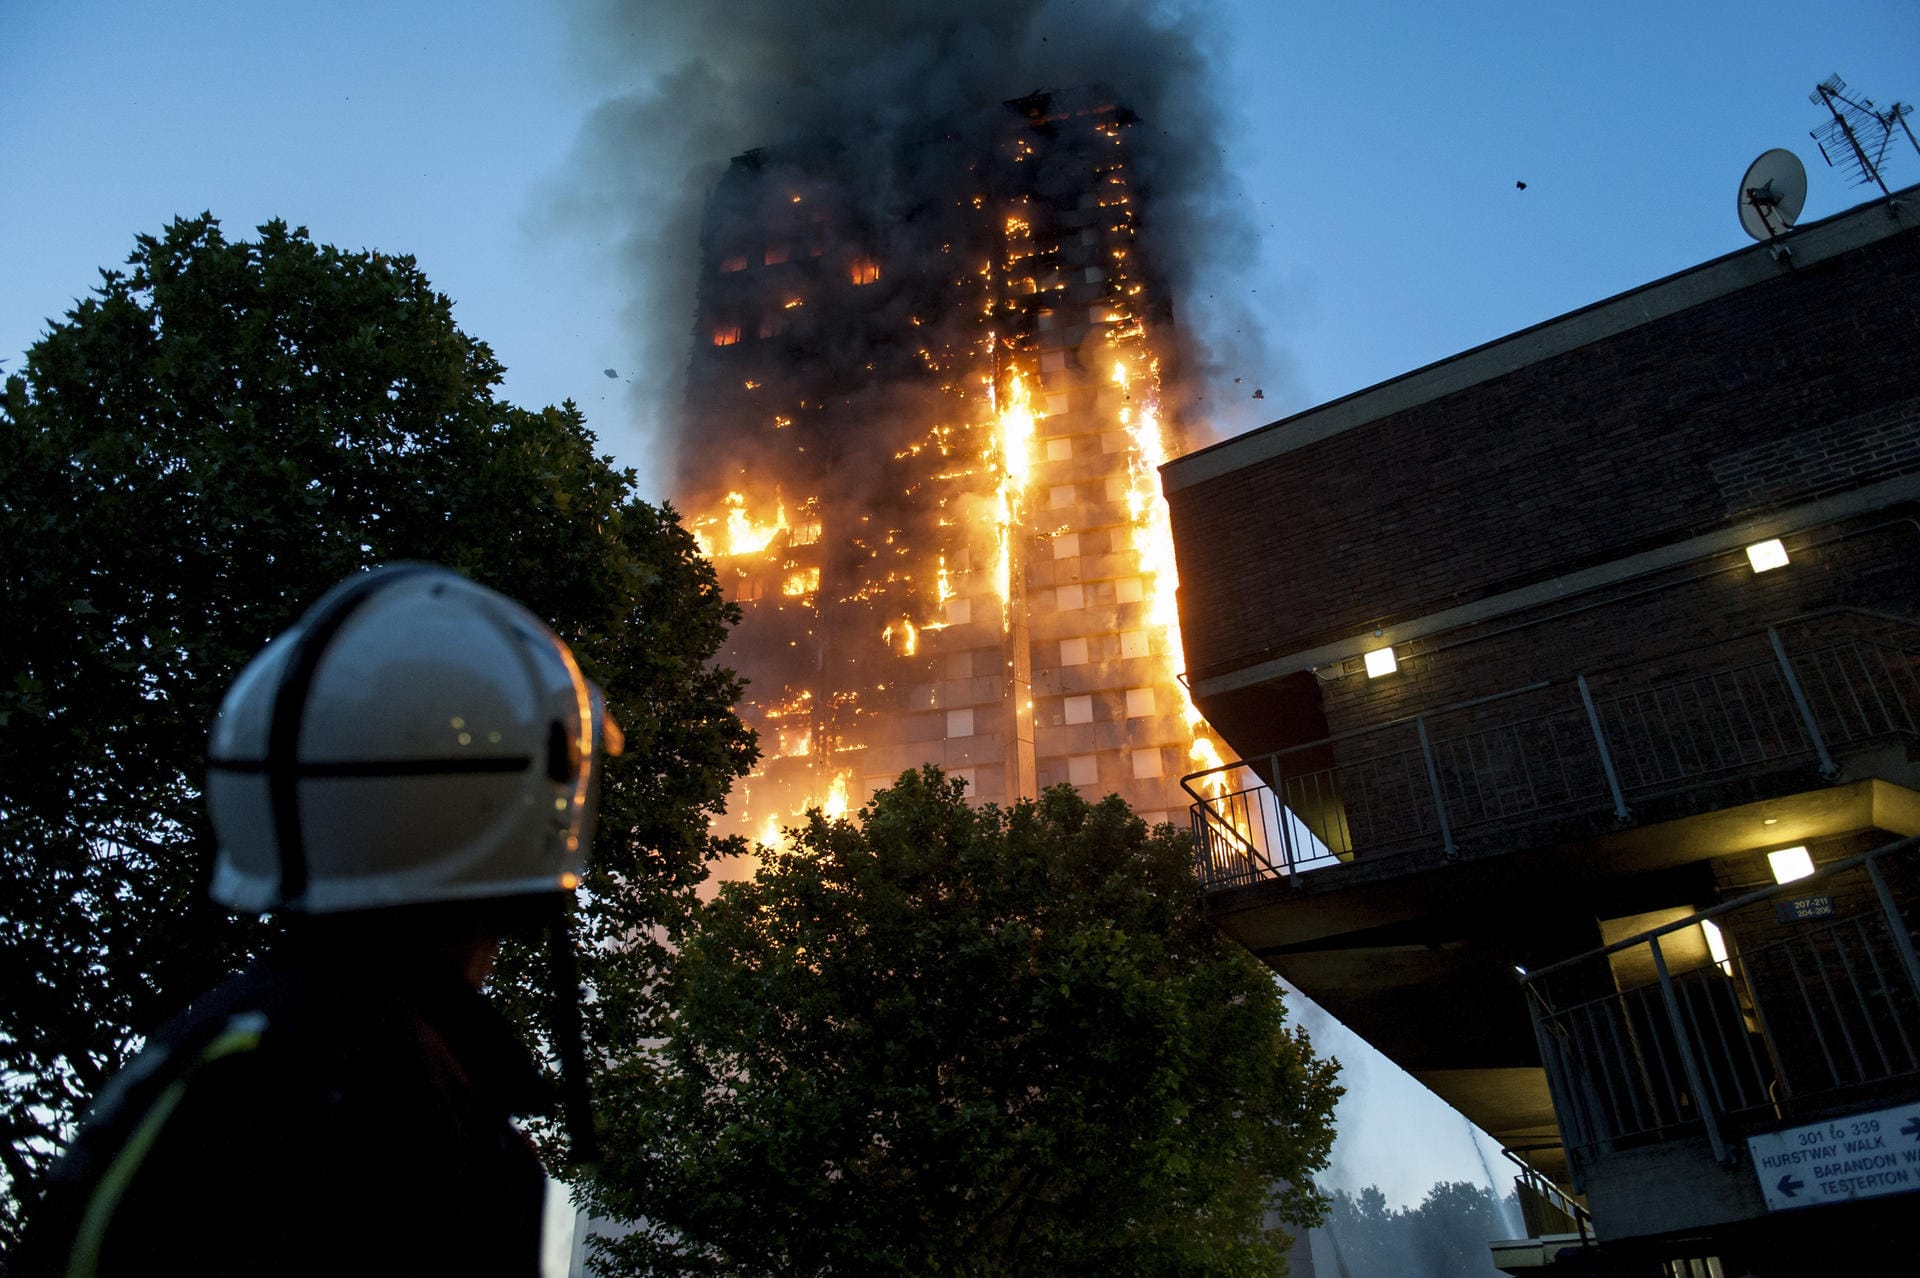 Feuerwehrleute beobachten hilflos, wie der Grenfell Tower in London abbrennt. Der Hochhausbrand steht beispielhaft für die Folgen von Sparwut und mangelhafte gesetzliche Vorschriften.